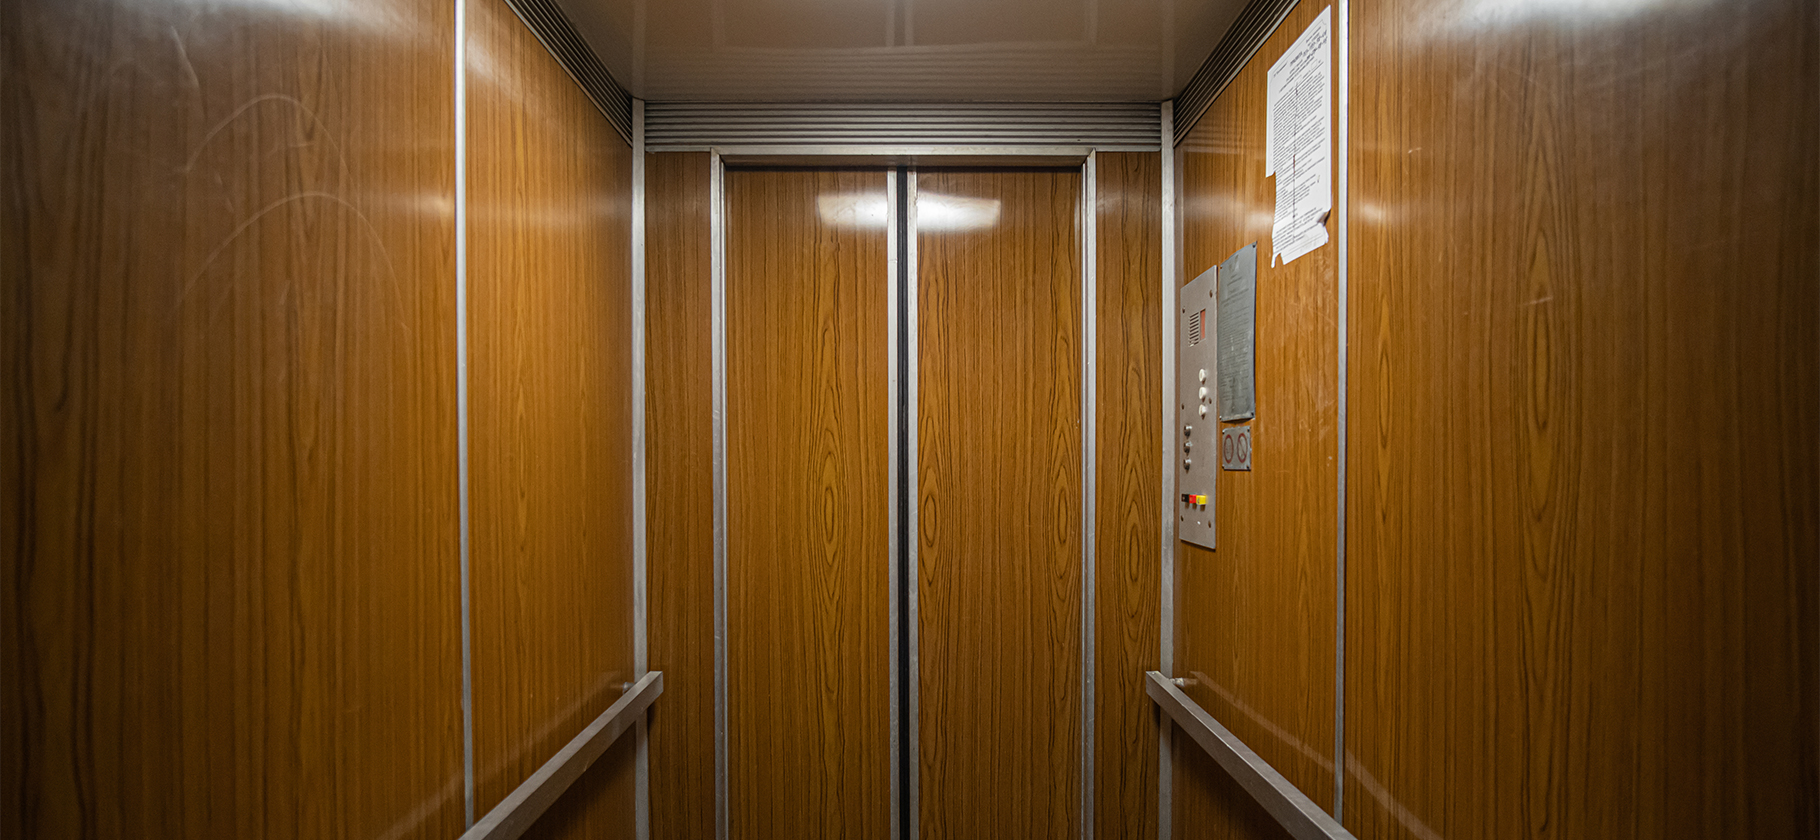 За безопасность лифтов в домах теперь отвечает Ростехнадзор: что изменится